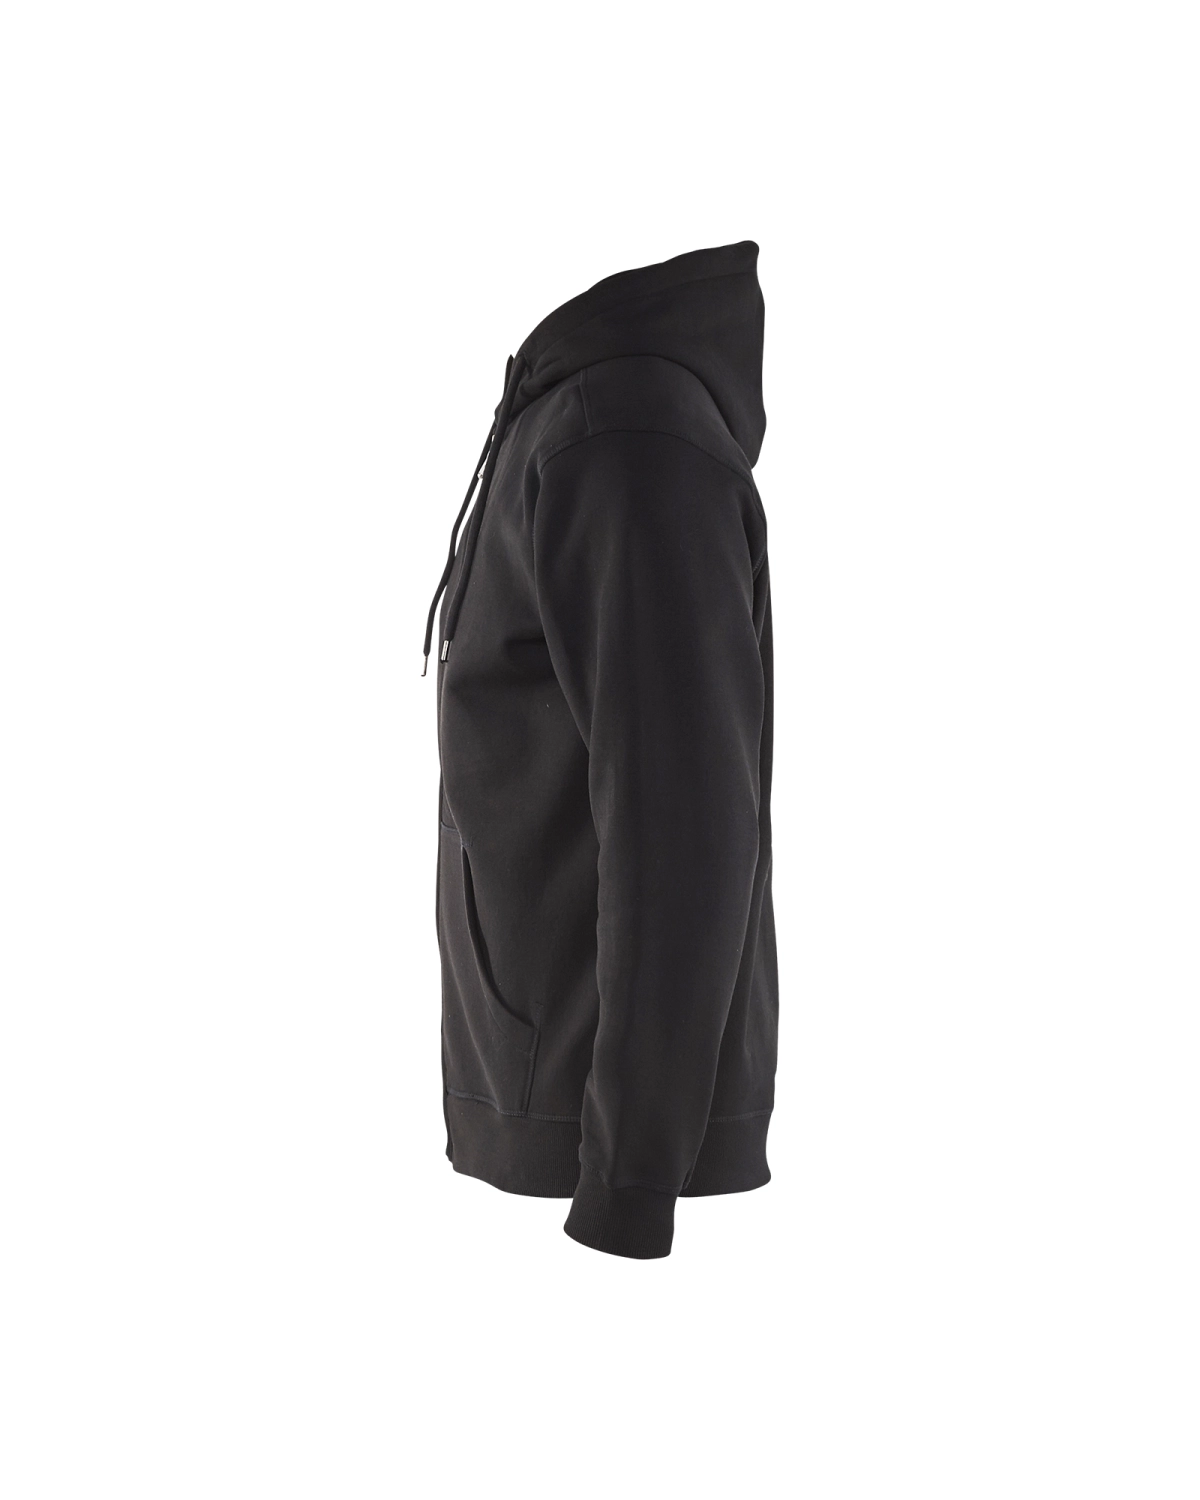 Blåkläder 3366 Hooded sweatshirt - zwart - M